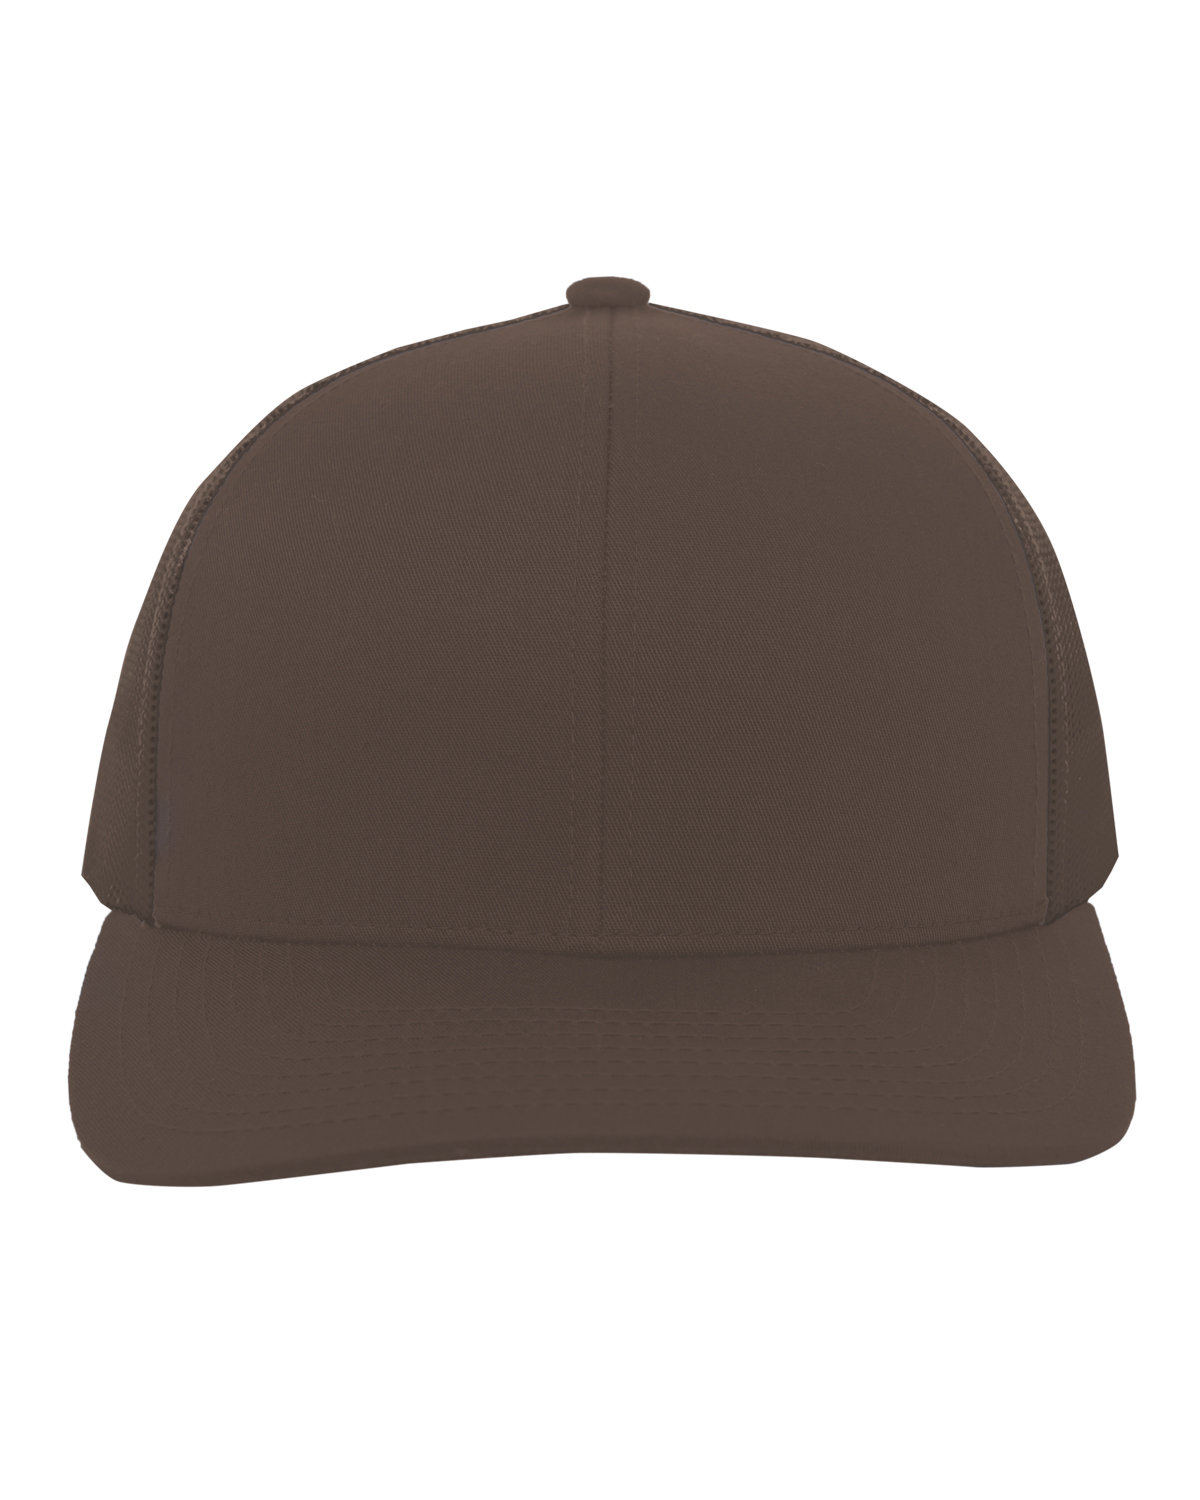 Pacific Headwear Trucker Snapback Hat BROWN 